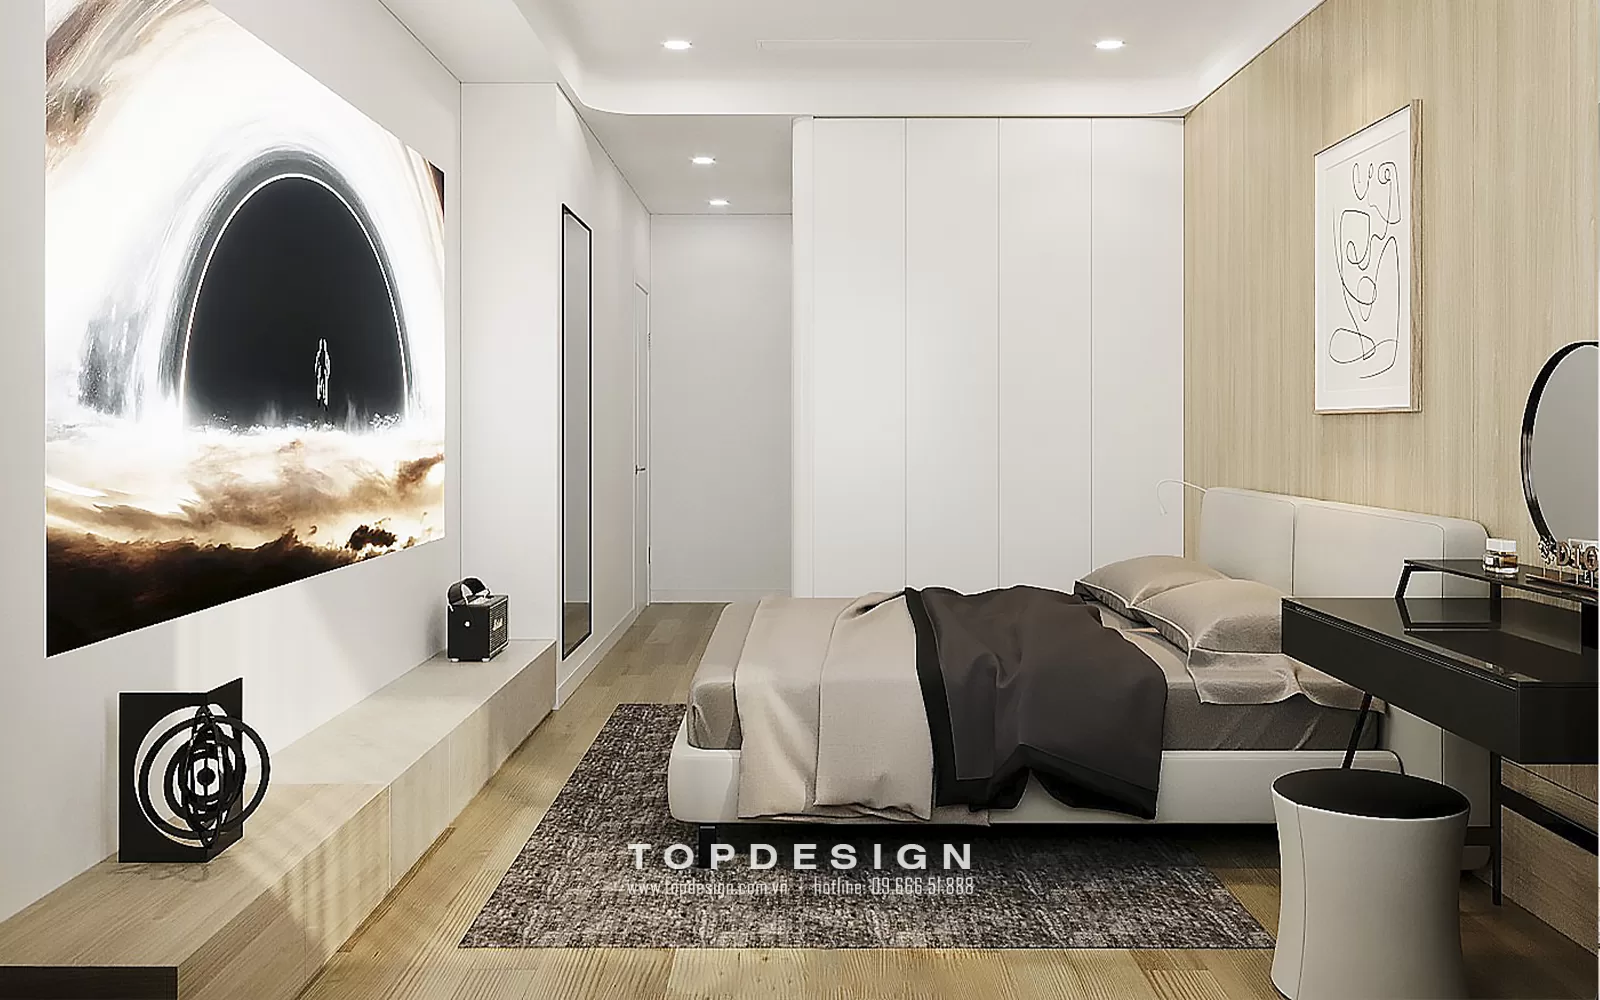 Thiết kế nội thất nhà phố hiện đại - TOPDESIGN - 30